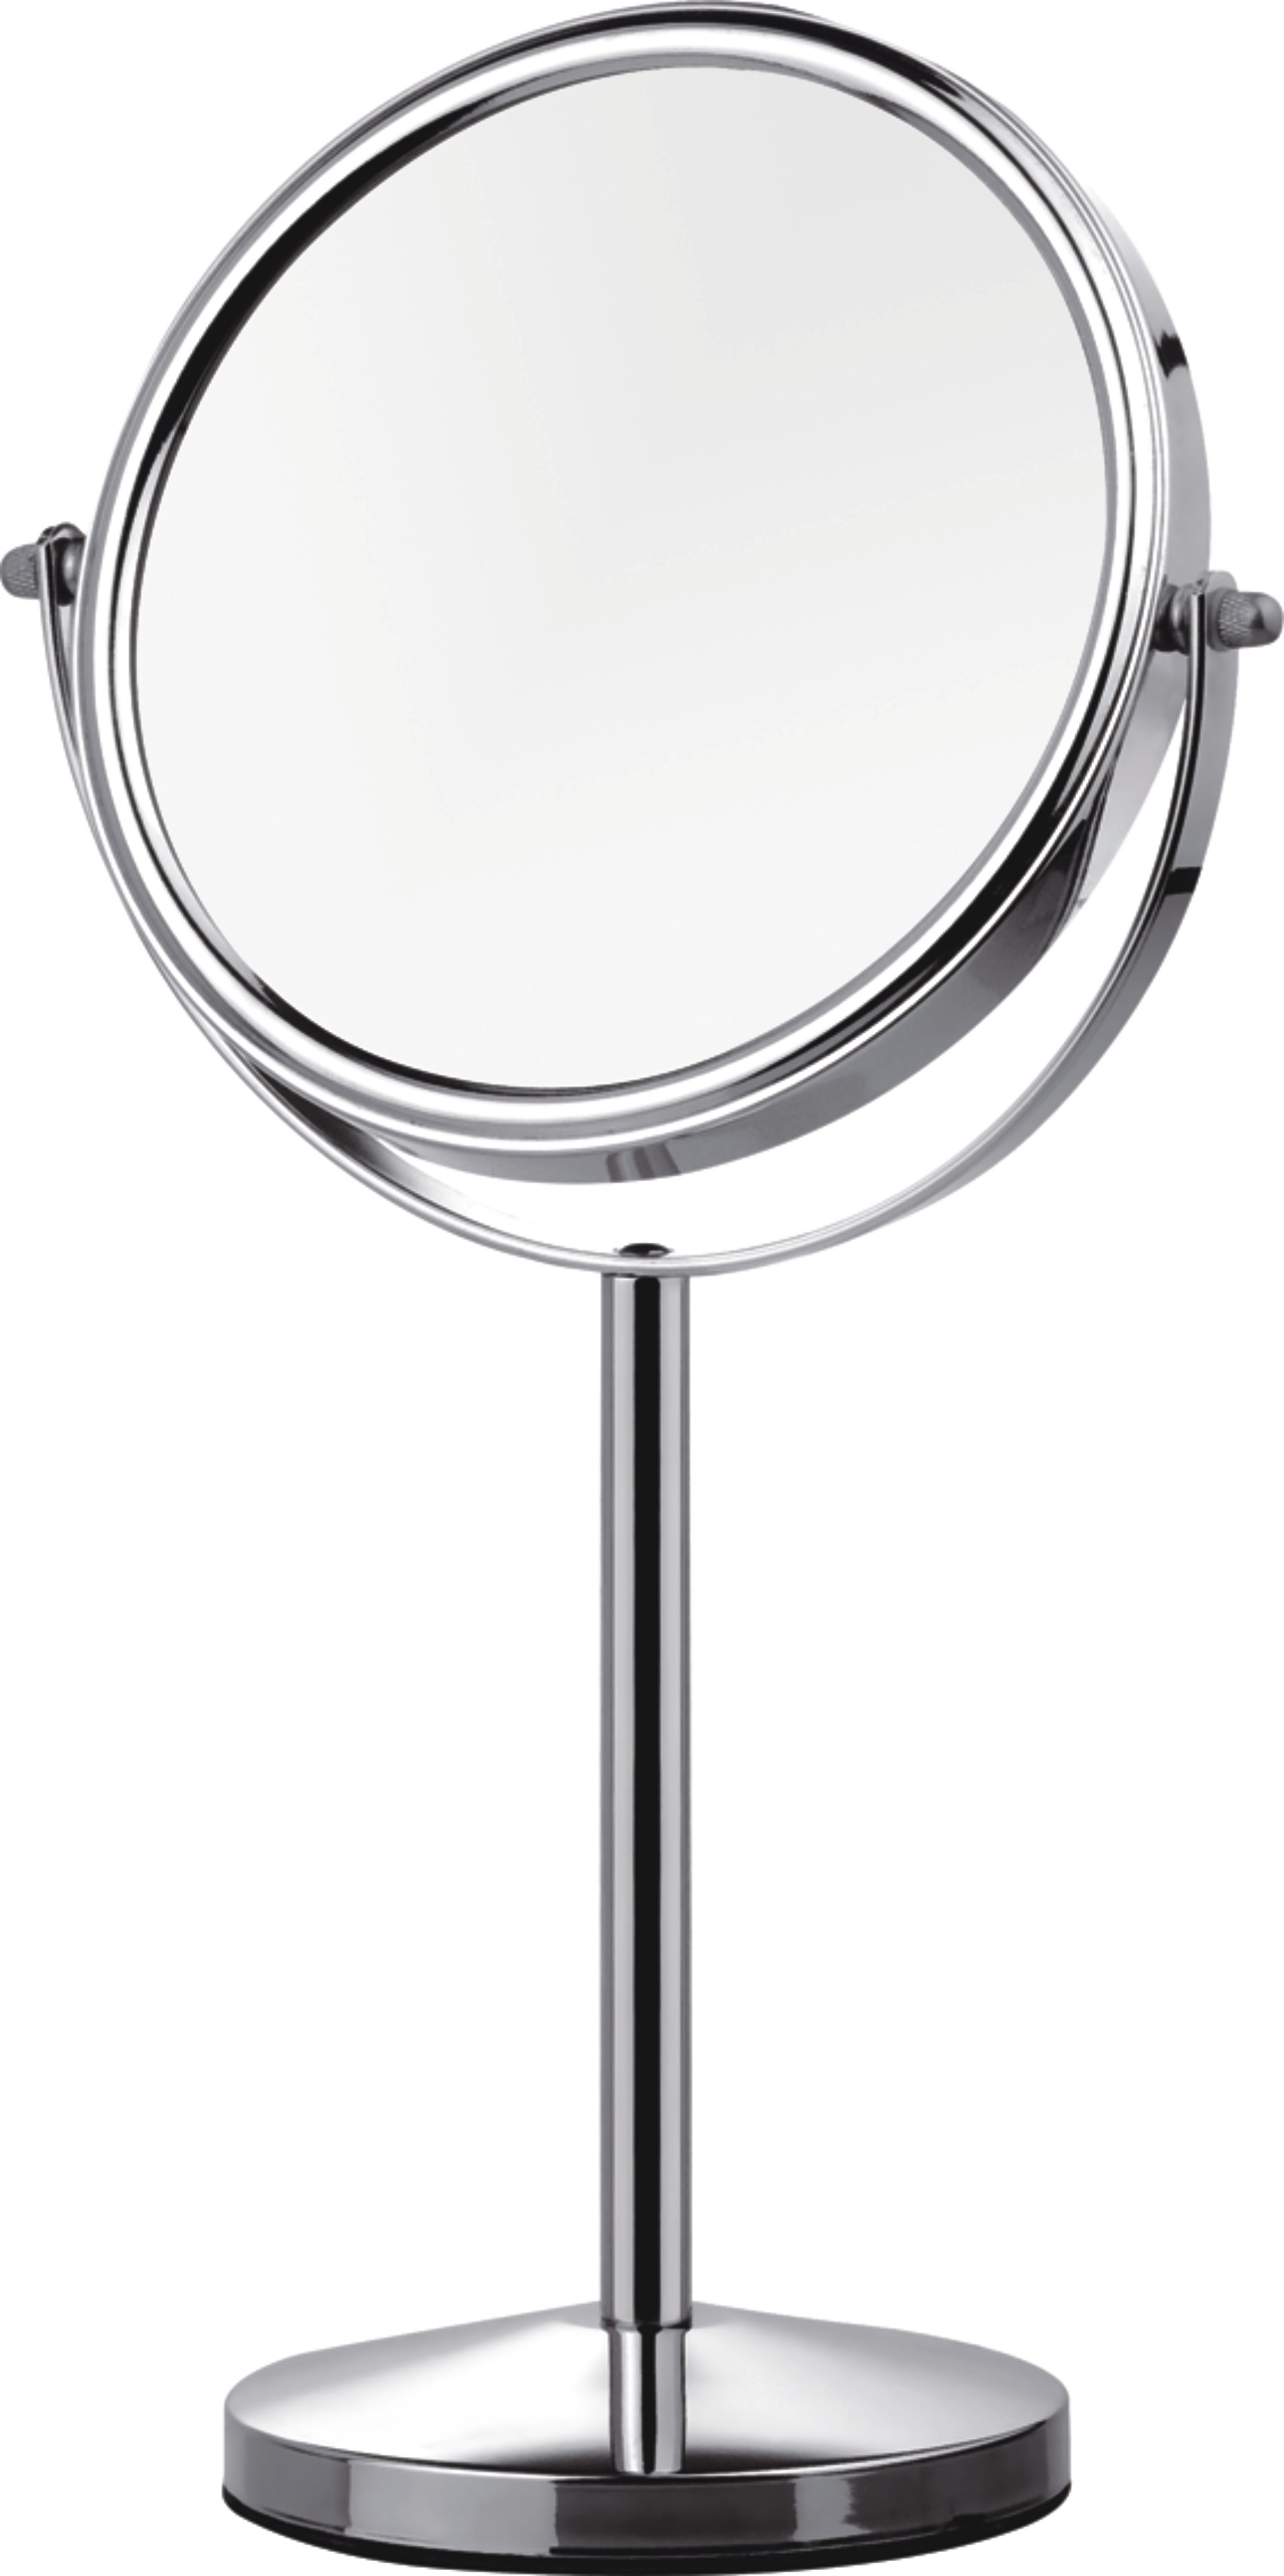 缪思化妆镜led化妆镜双面简约台式化妆镜3倍放大镜梳妆镜美颜必备